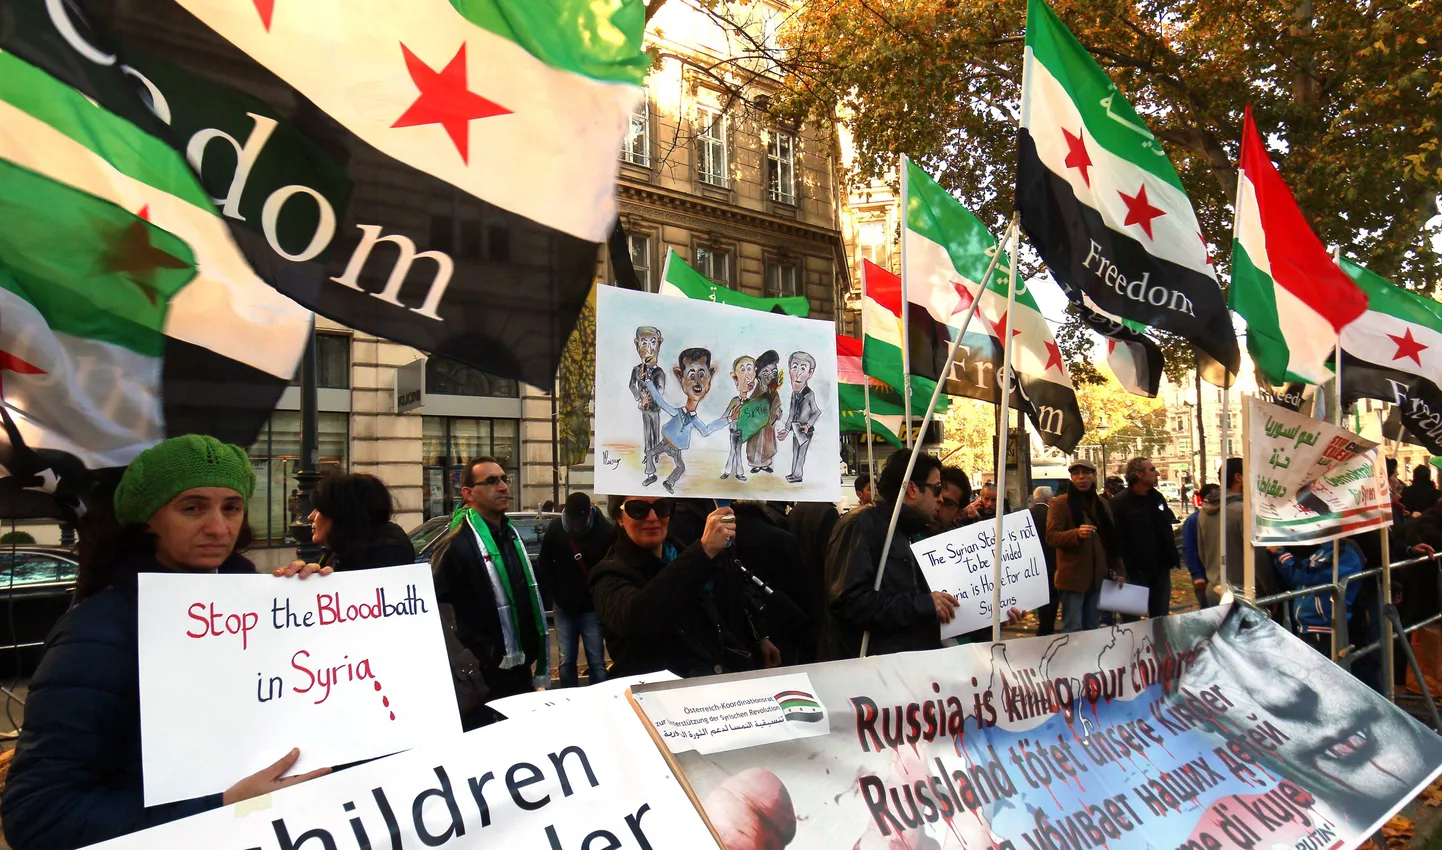 Hotelli juurde, kus toimusid kriisikõnelused lahendamaks Süüria konflikti, kogunesid protestijad.